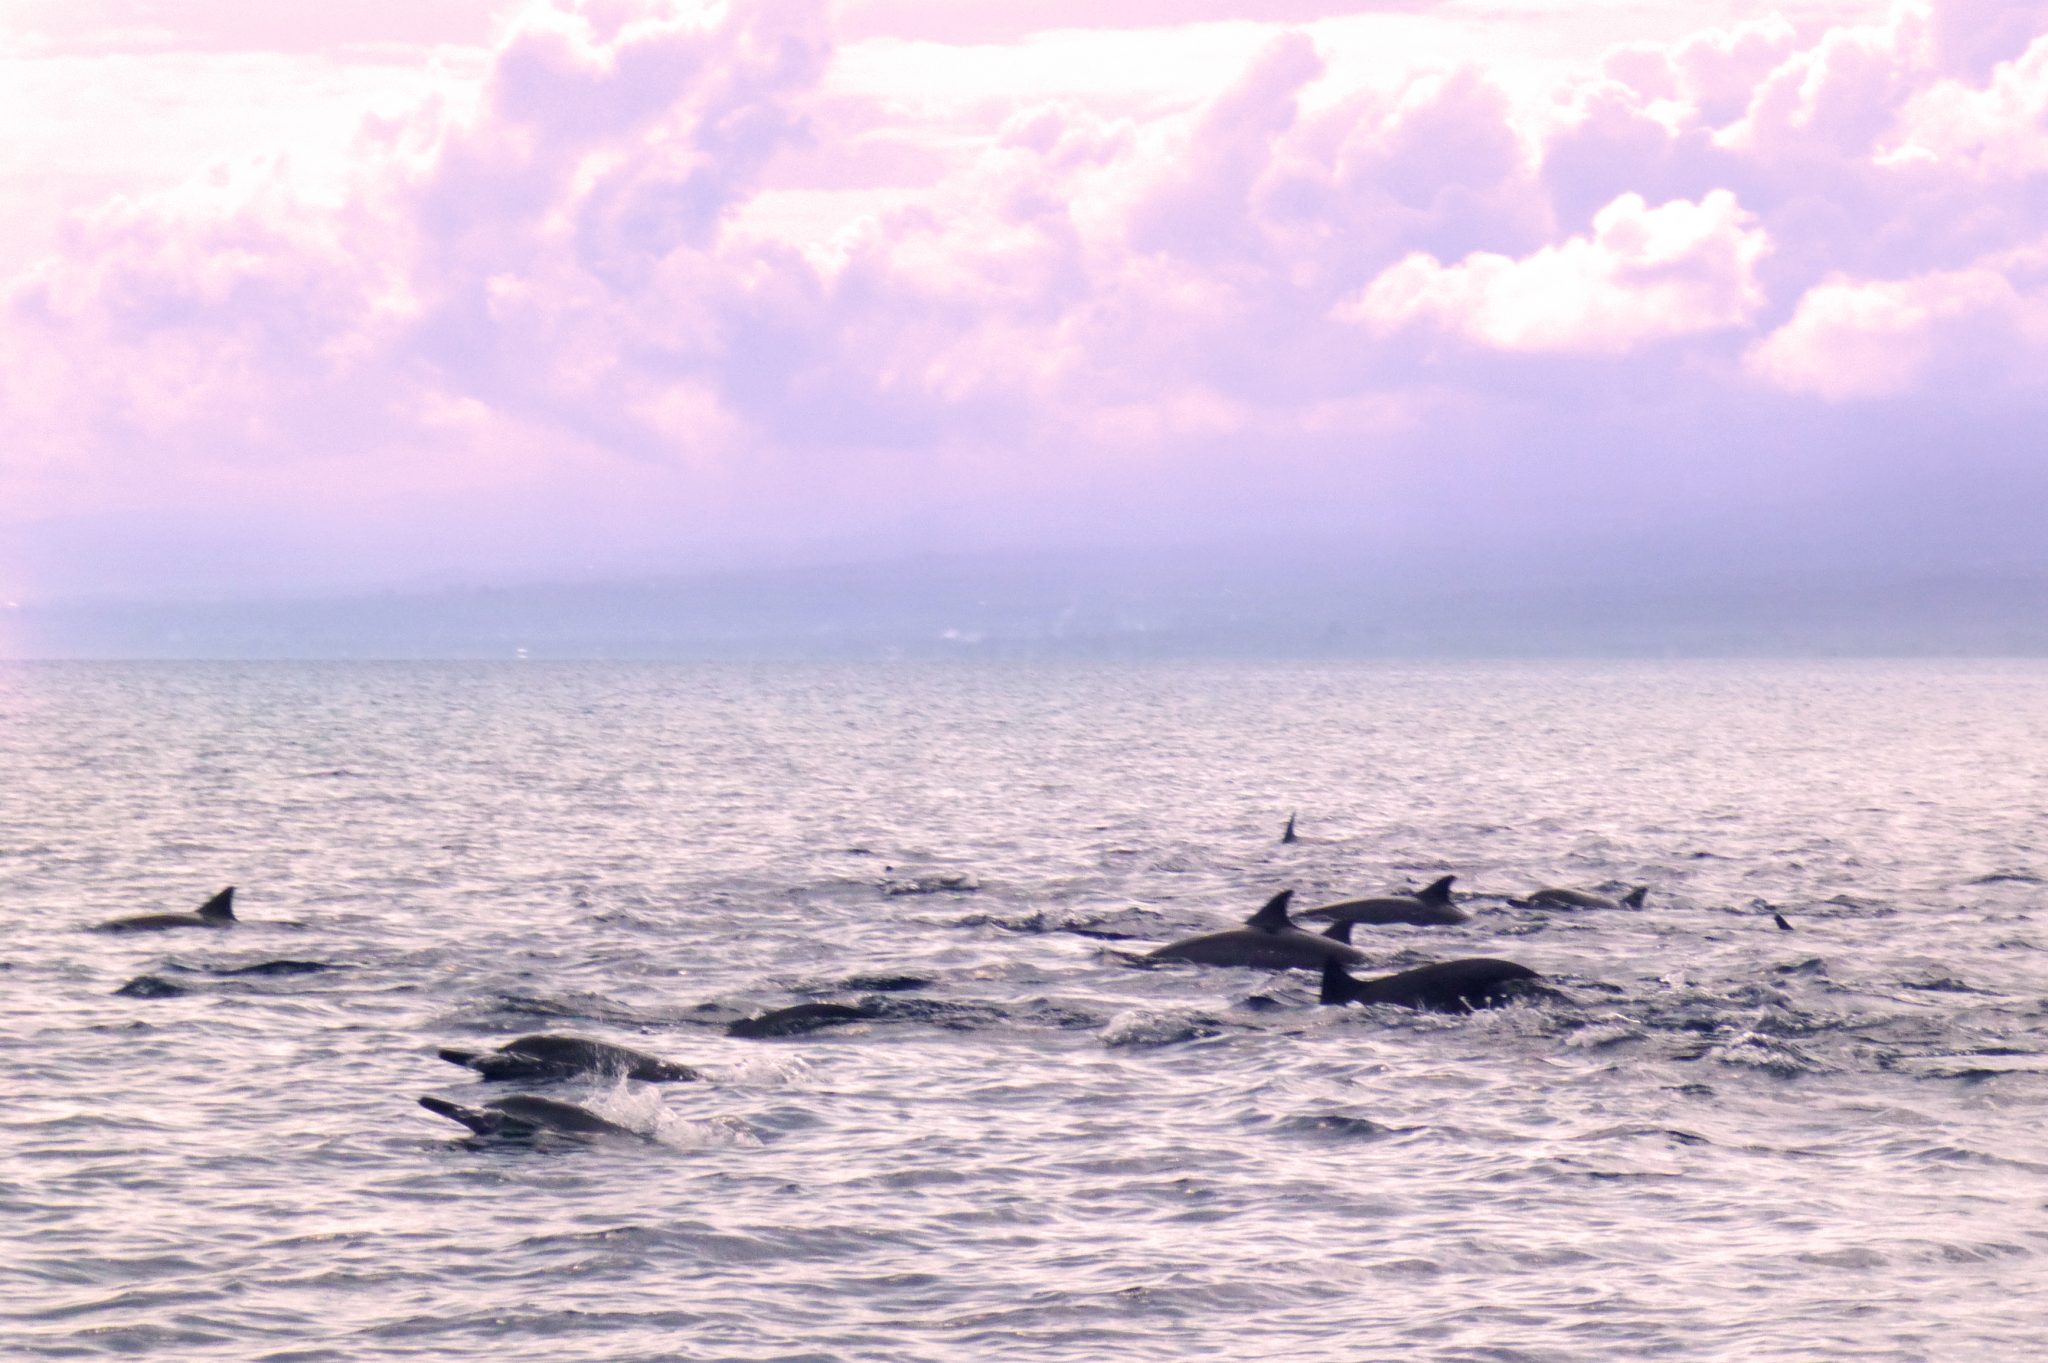 Dolphins in Lovina Bali Indonesia